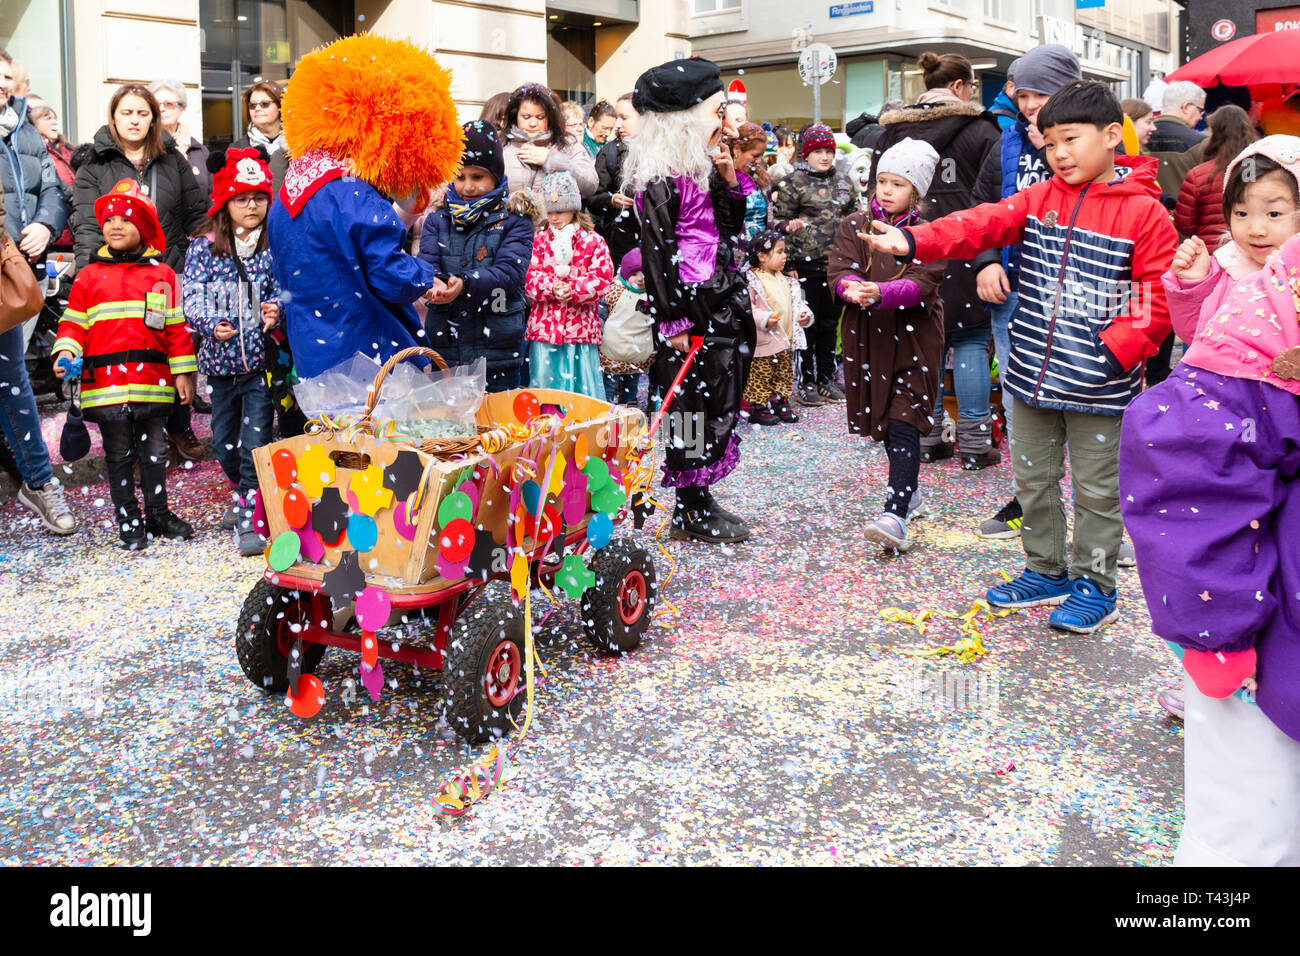 Freie Strasse, Bâle, Suisse - Mars 12th, 2019. Un petit carnaval coloré décoré panier sur une rue couverte de confettis Banque D'Images